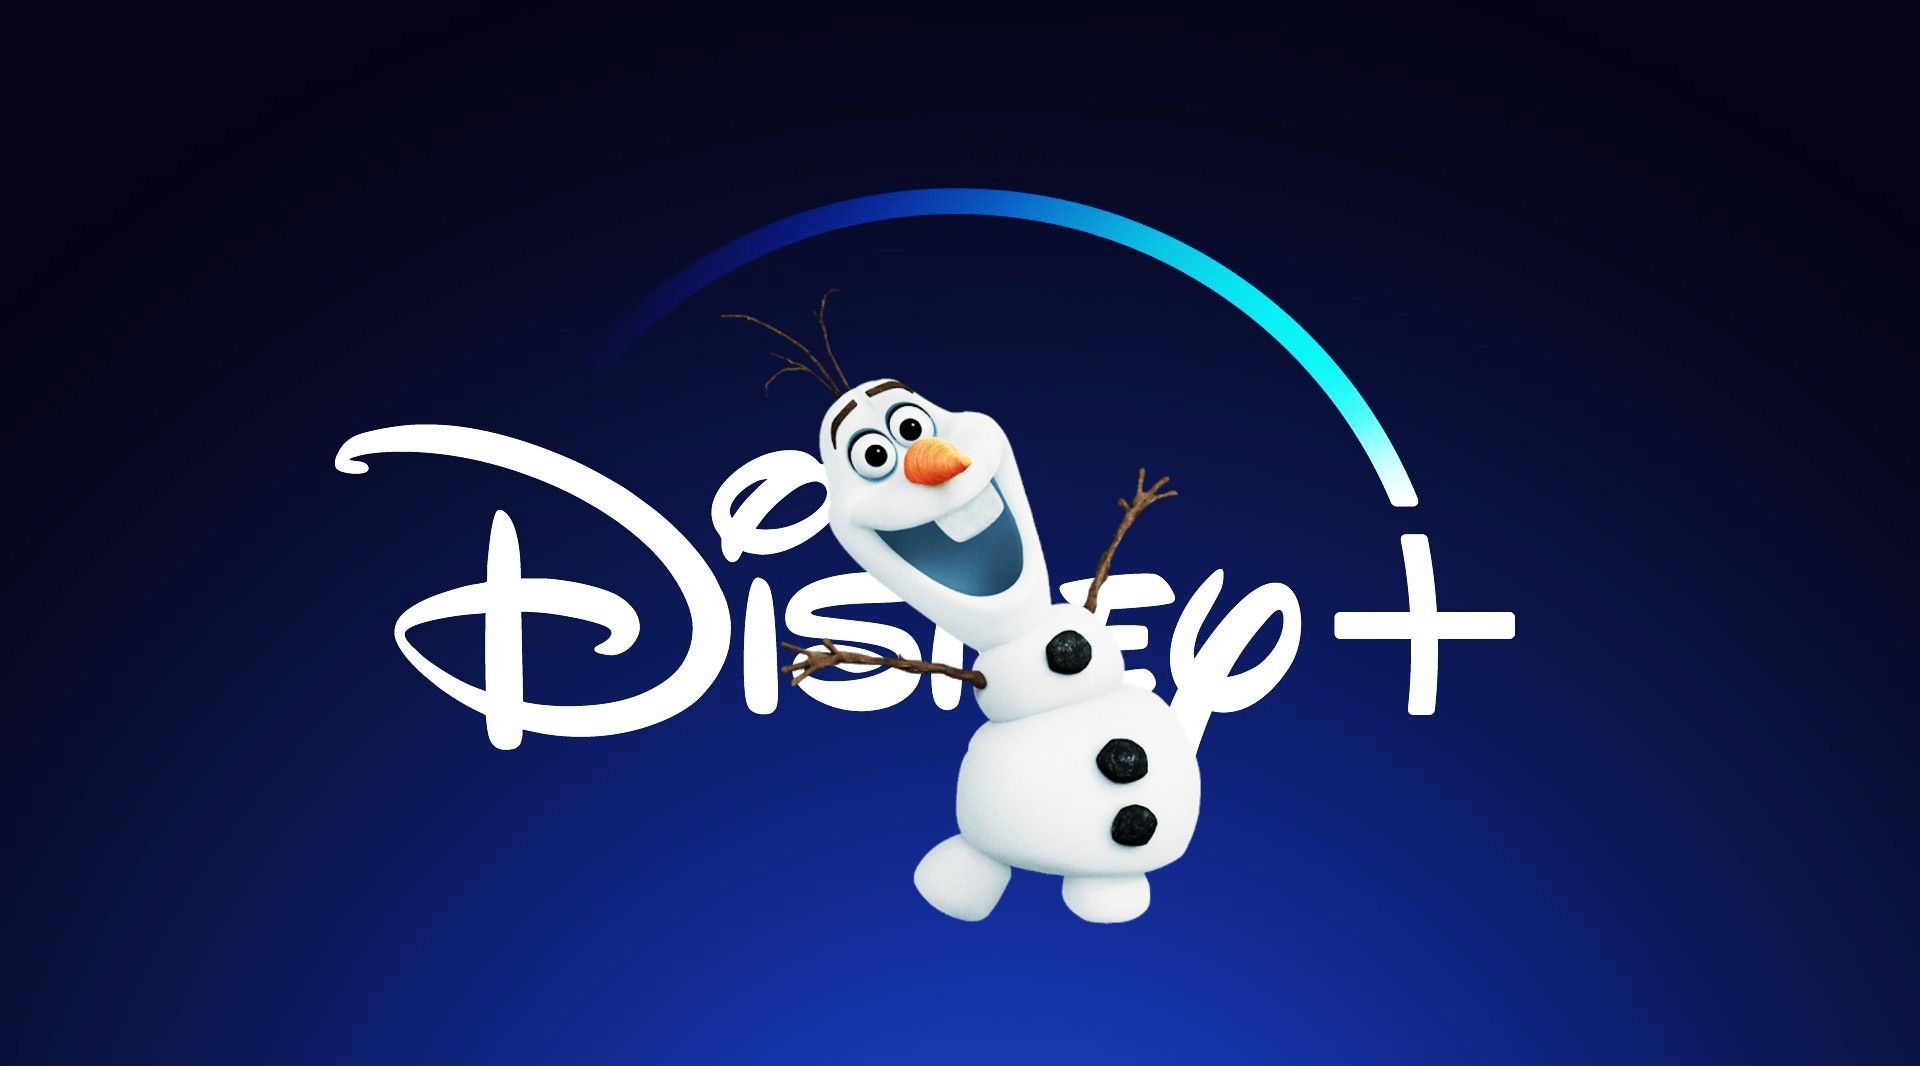 Olaf estrenará nuevo corto animado en Disney Plus